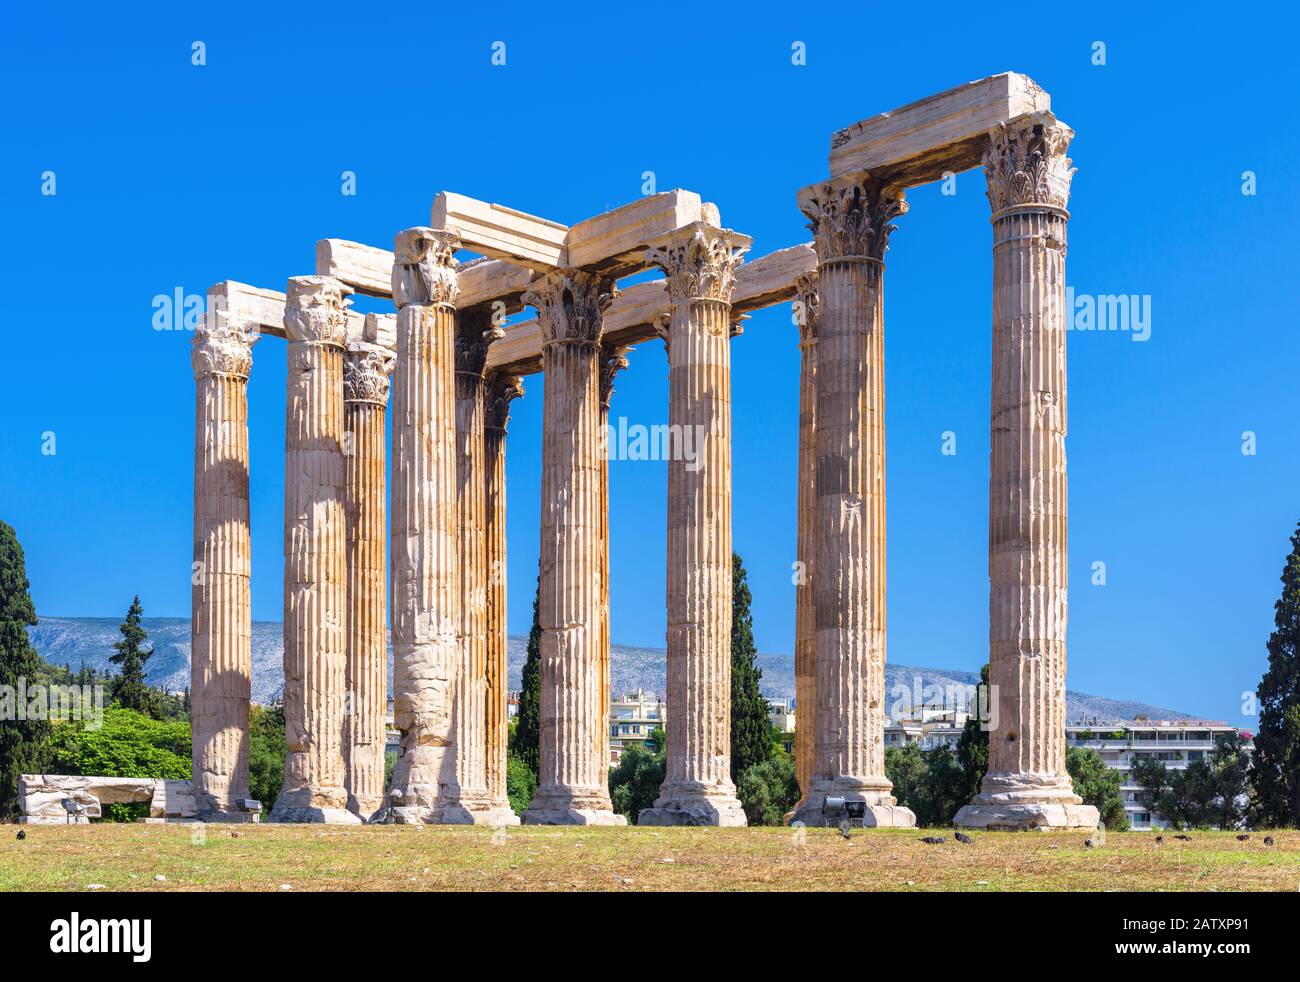 Tempel des olympischen Zeus, Athen, Griechenland. Es ist eine berühmte Touristenattraktion Athens. Panorama der Antiken griechischen Ruinen im Zentrum von Athen. Klasse Stockfoto